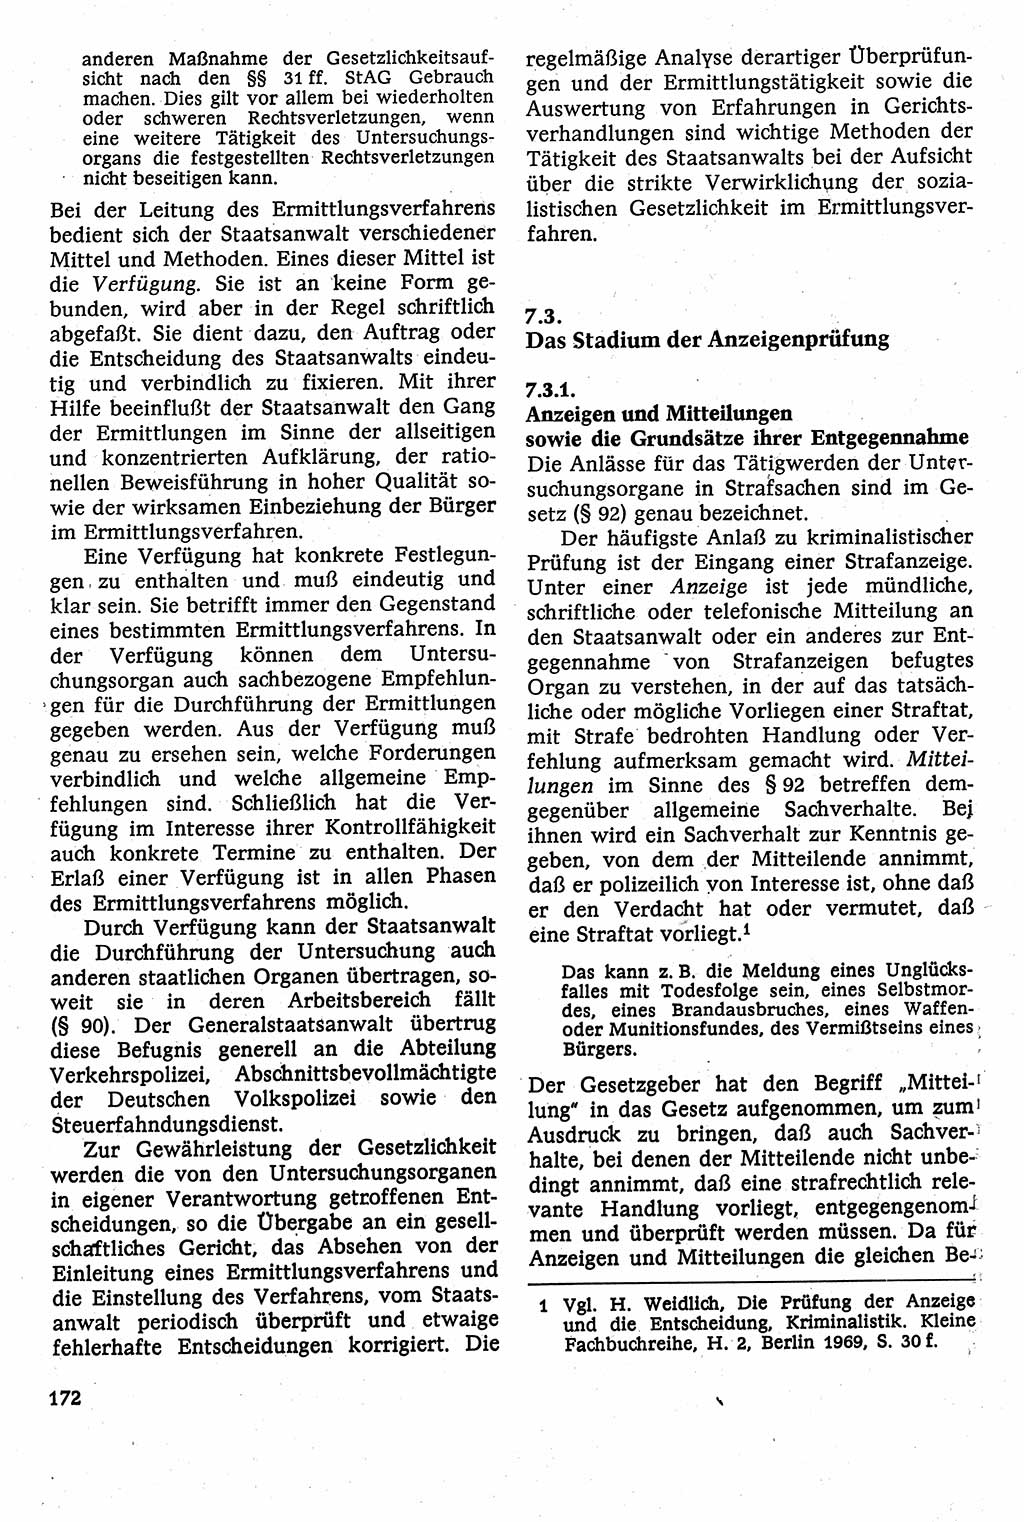 Strafverfahrensrecht [Deutsche Demokratische Republik (DDR)], Lehrbuch 1982, Seite 172 (Strafverf.-R. DDR Lb. 1982, S. 172)